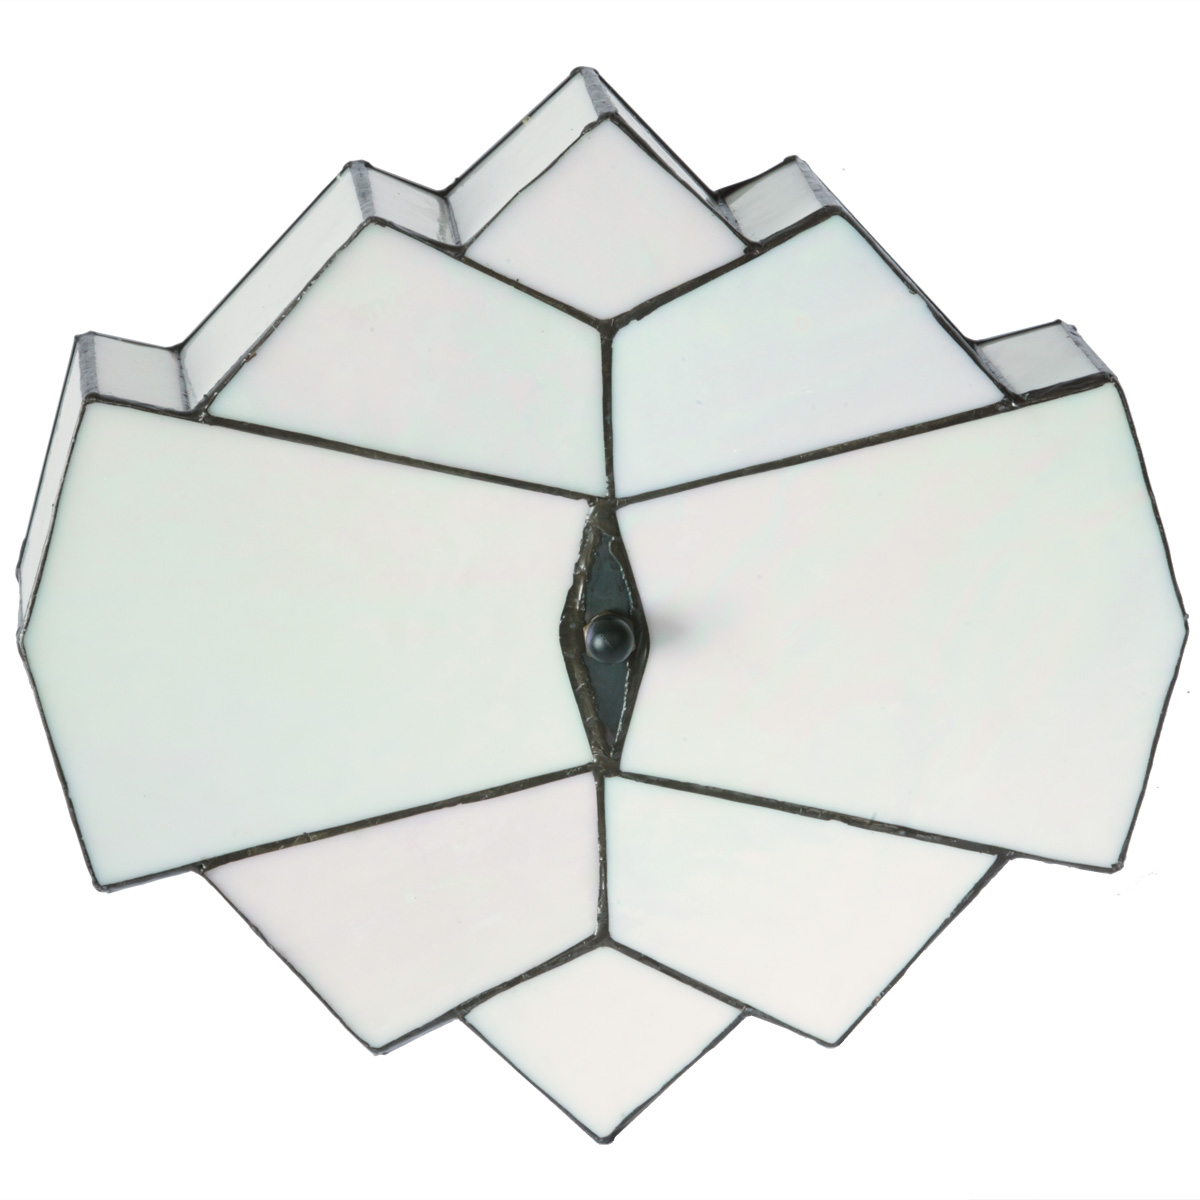 Art Déco-Deckenleuchte aus perlmuttfarbenem Tiffany-Glas 33 cm: Auf diesem Foto schön zu sehen: Das irisierende Perlmuttglas